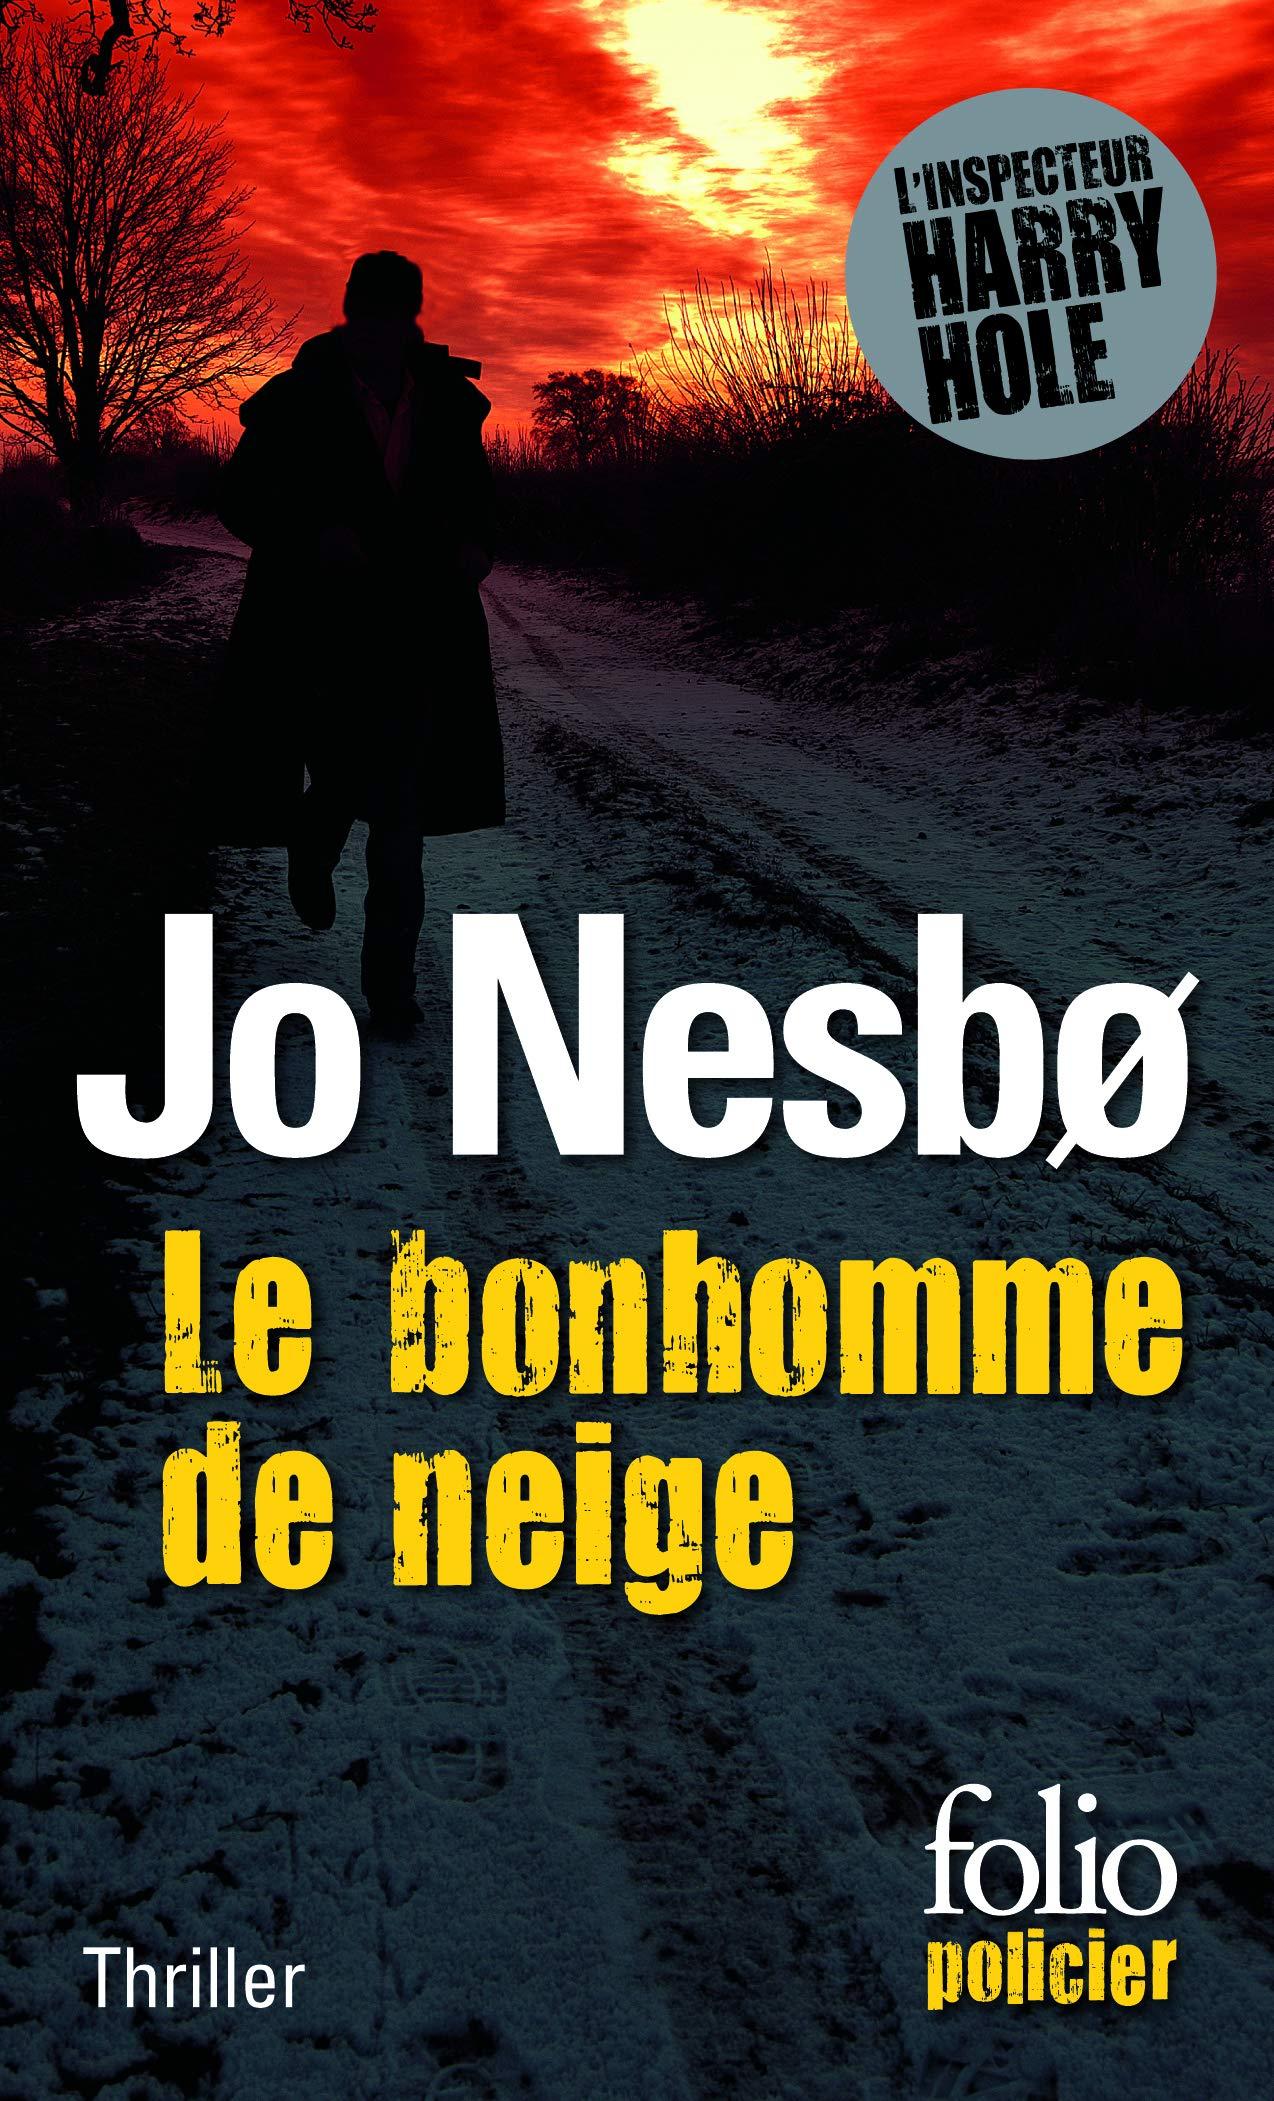 La couverture du livre "Le bonhomme de neige" de Jo Nesbo. [Folio policier]